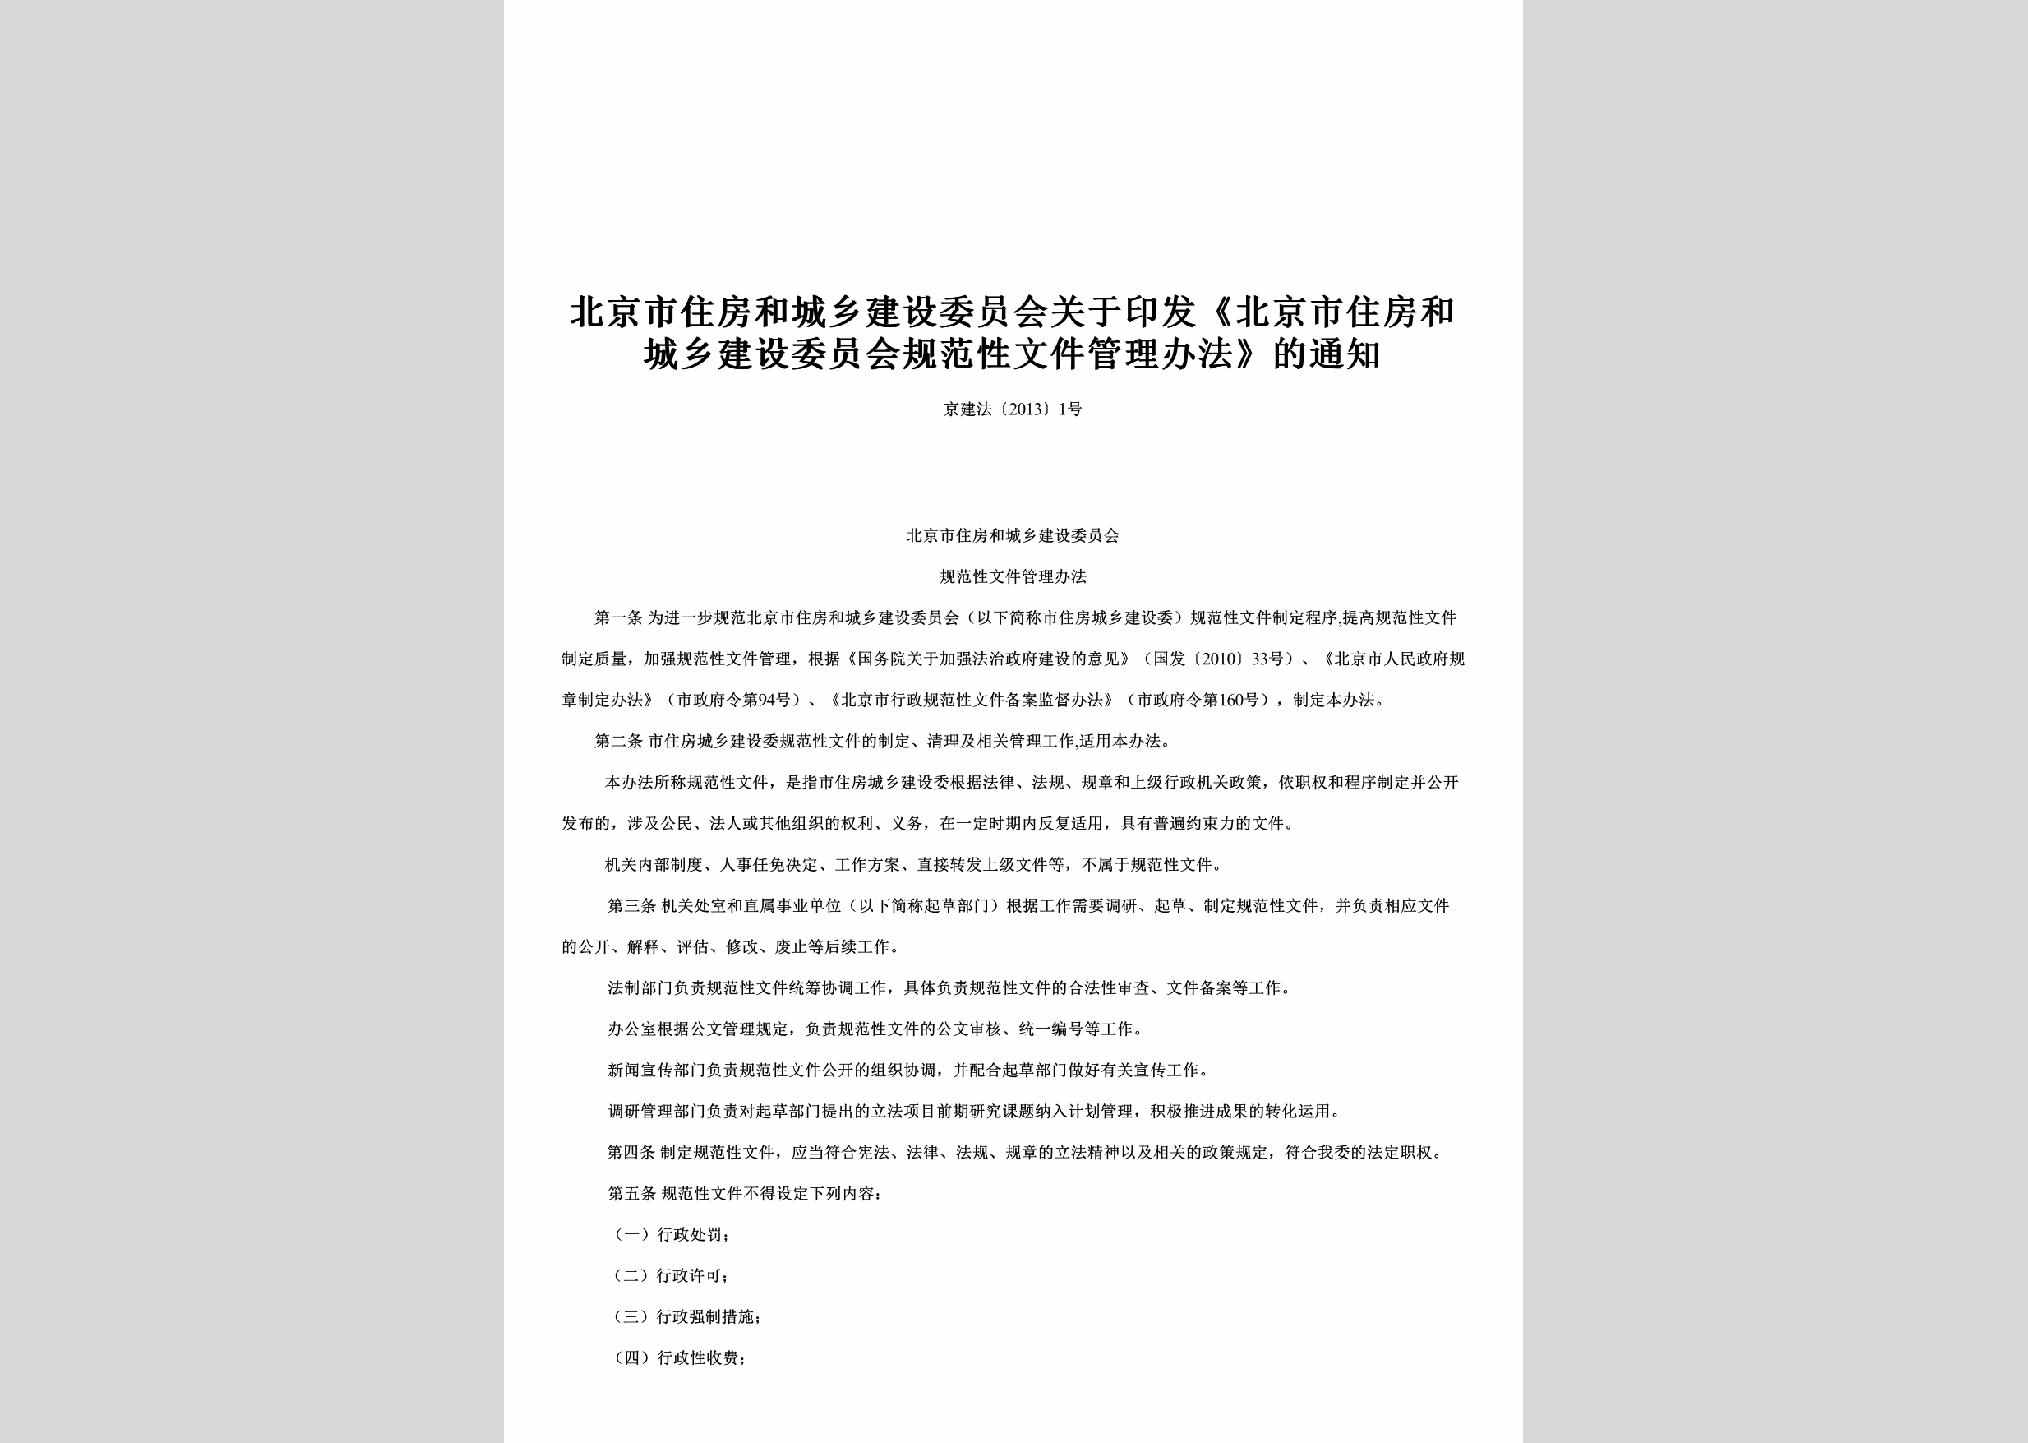 京建法[2013]1号：关于印发《北京市住房和城乡建设委员会规范性文件管理办法》的通知